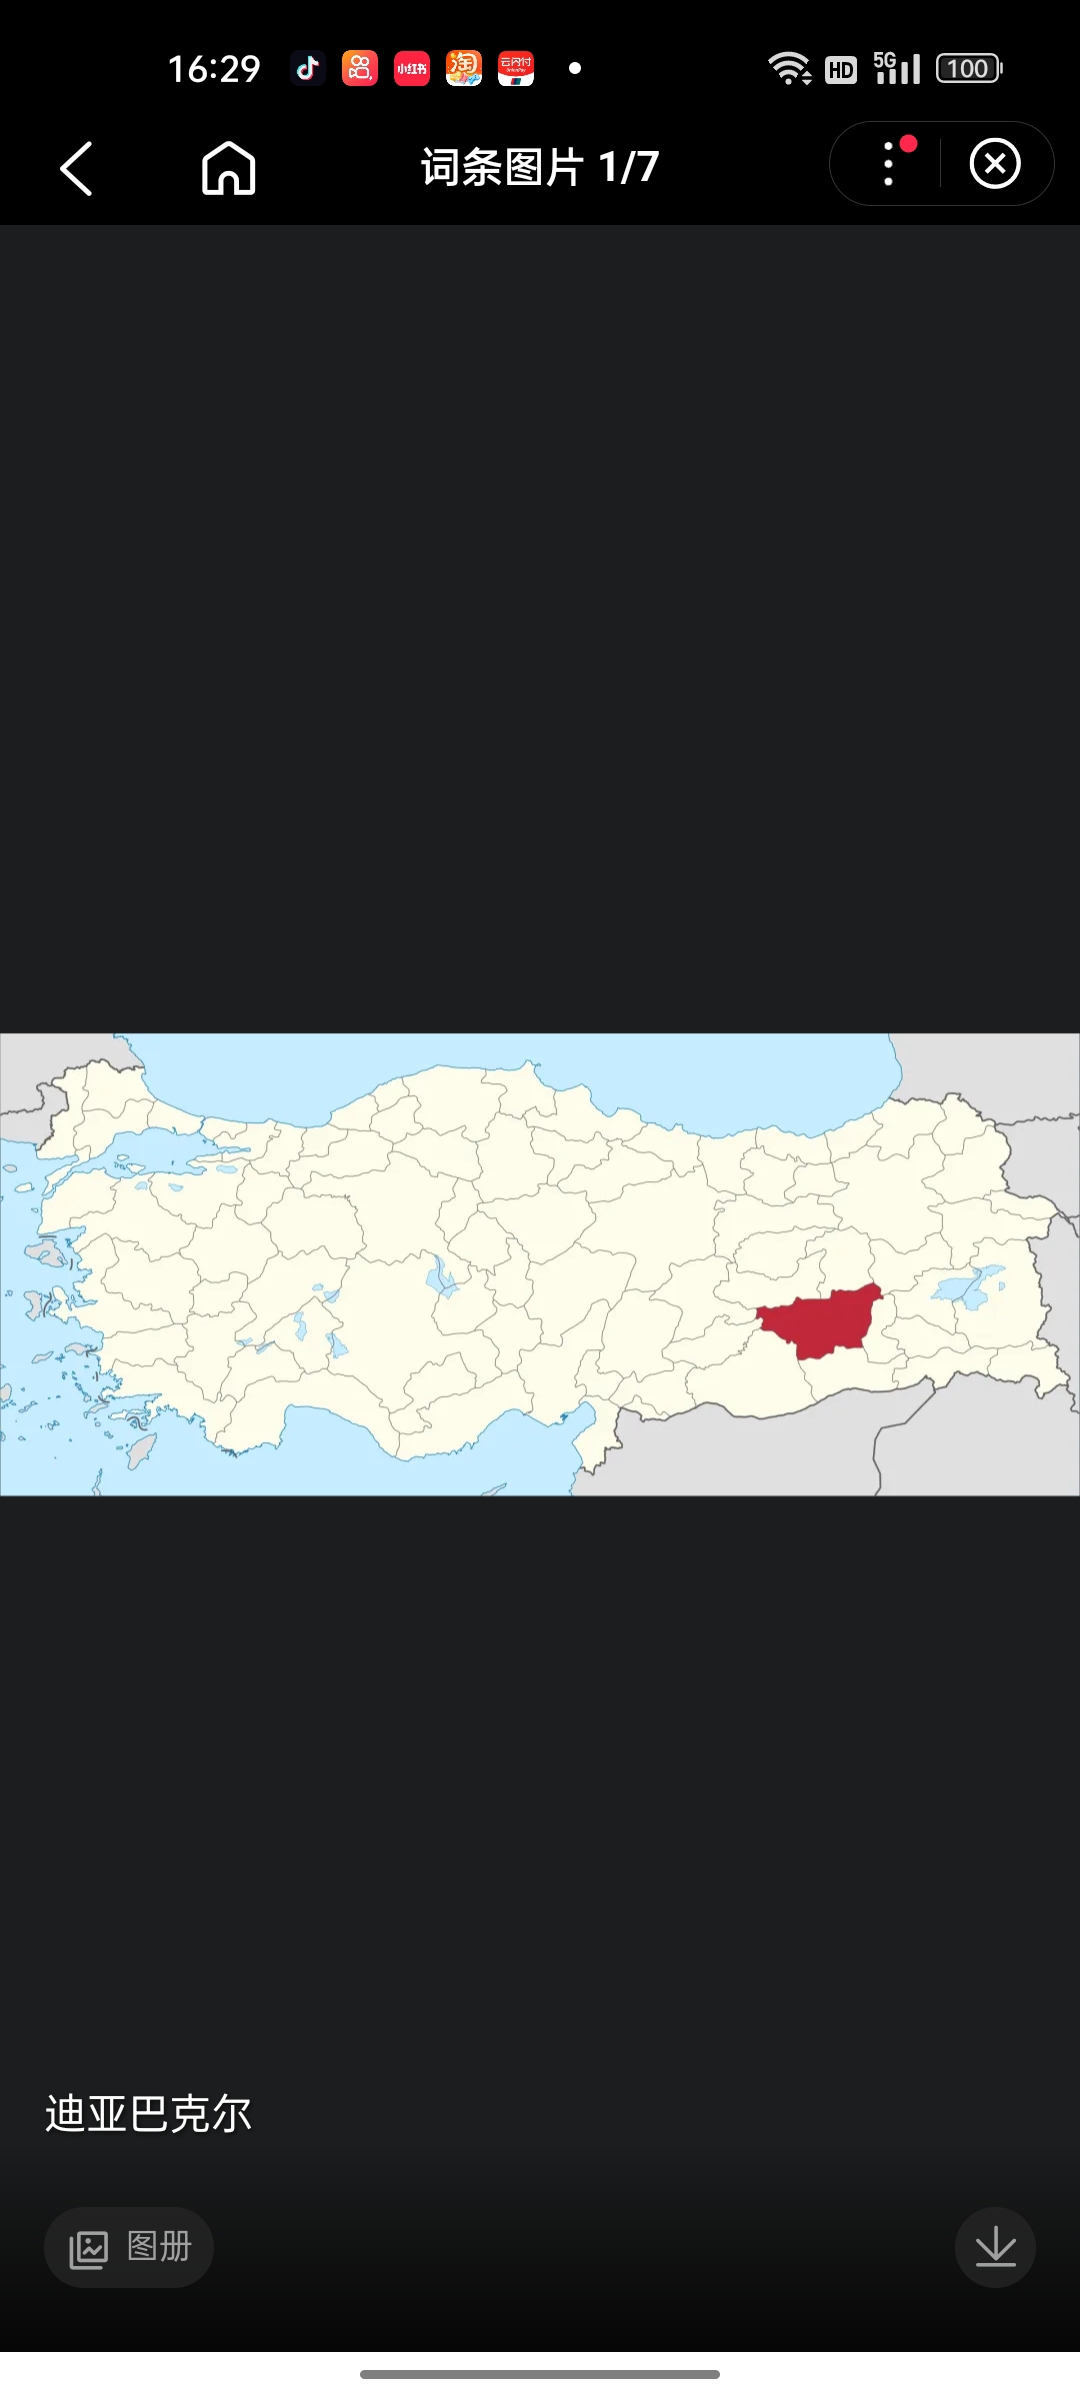 迪亚巴克尔位于土耳其东南部，为迪亚巴克尔省省会，人口约93万，为土耳其东南部第二大城市，仅次于加济安